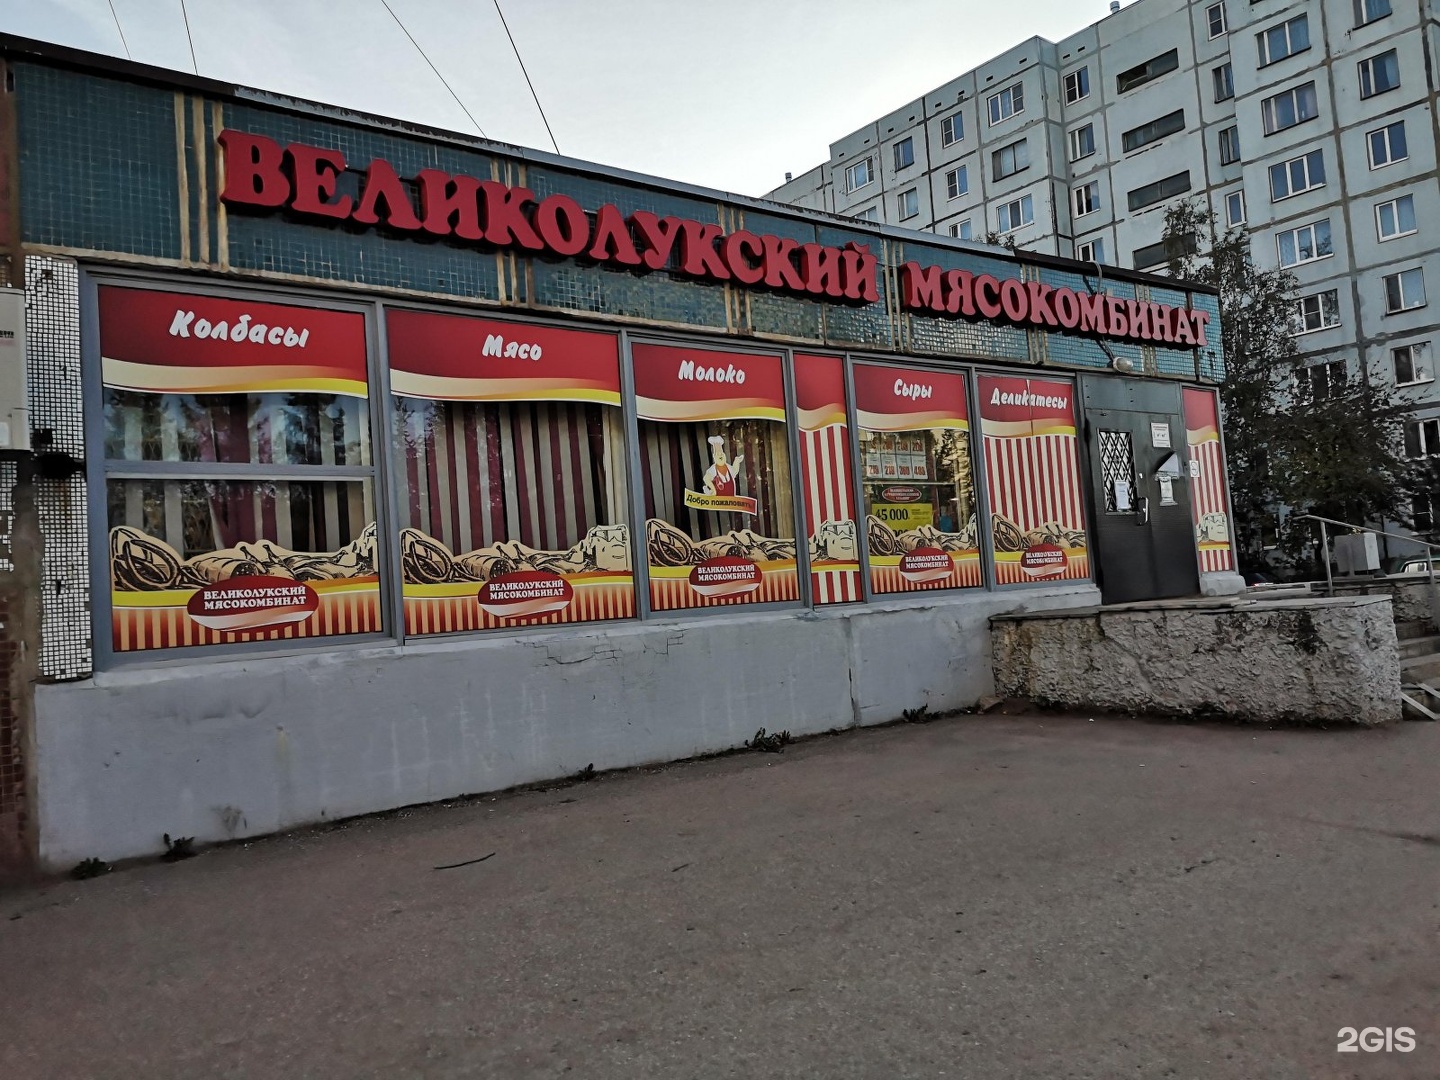 Великолукский мясокомбинат магазины Псков